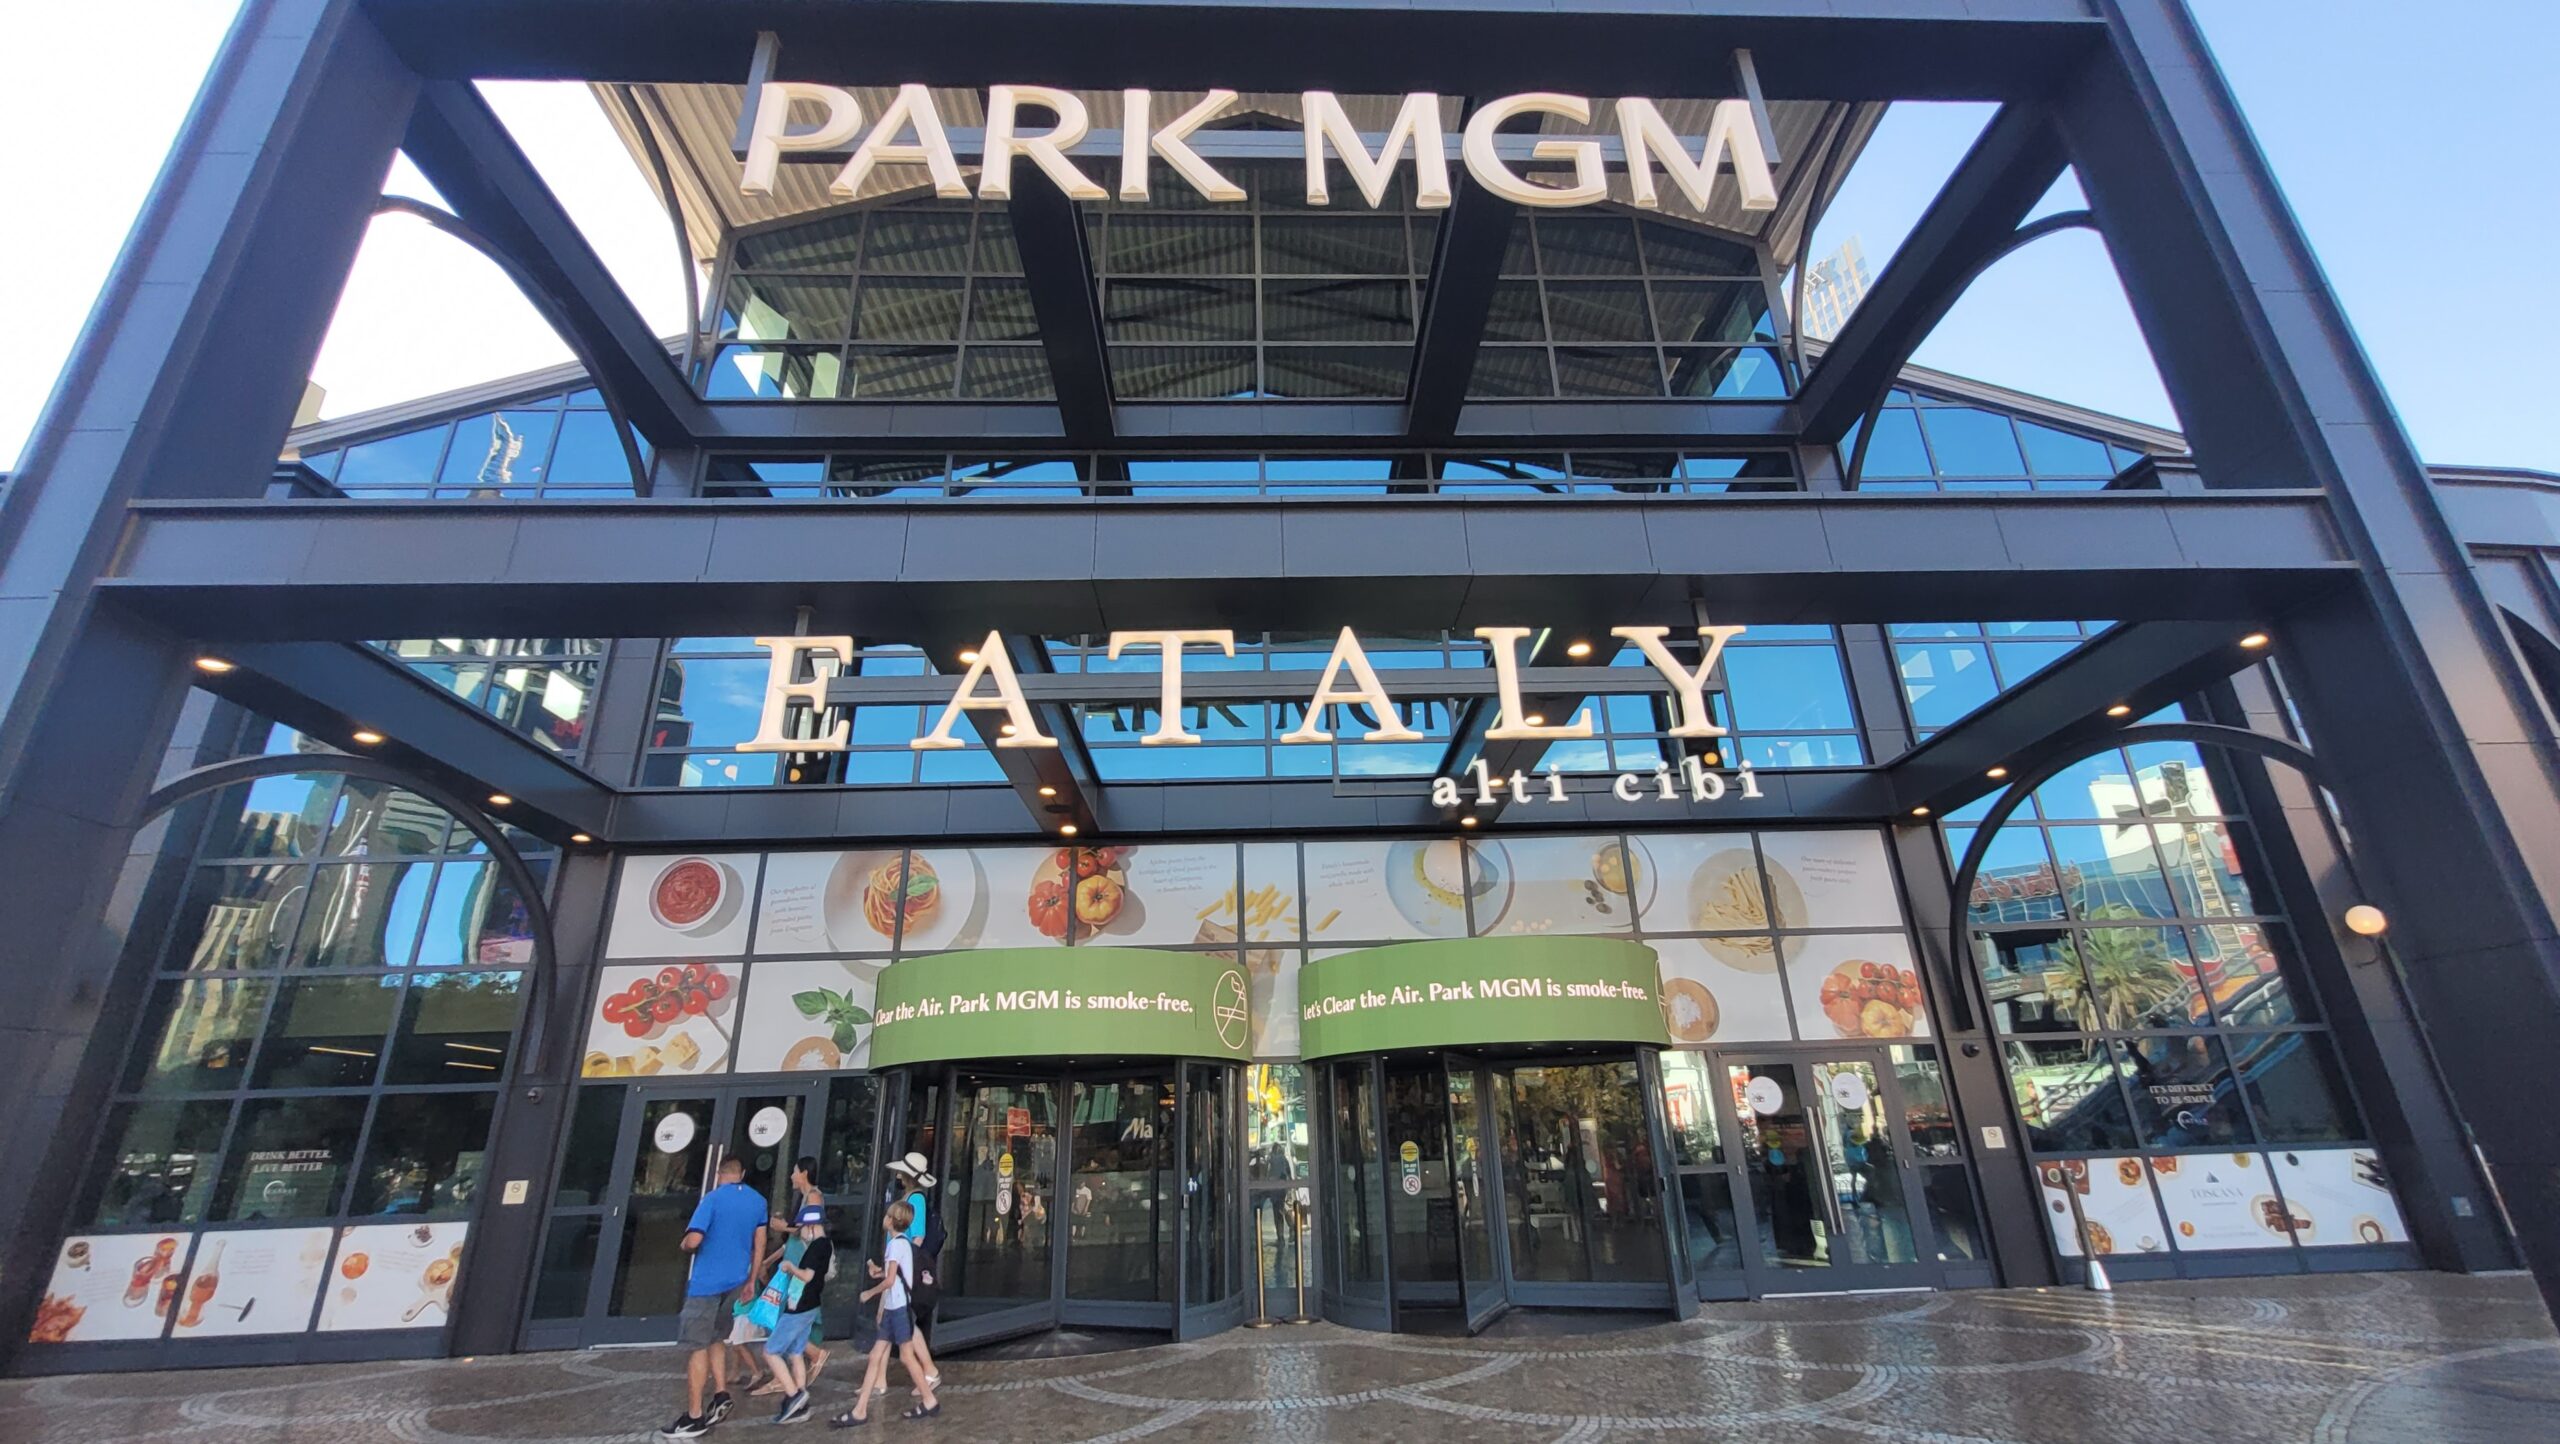 Park MGM Las Vegas Review